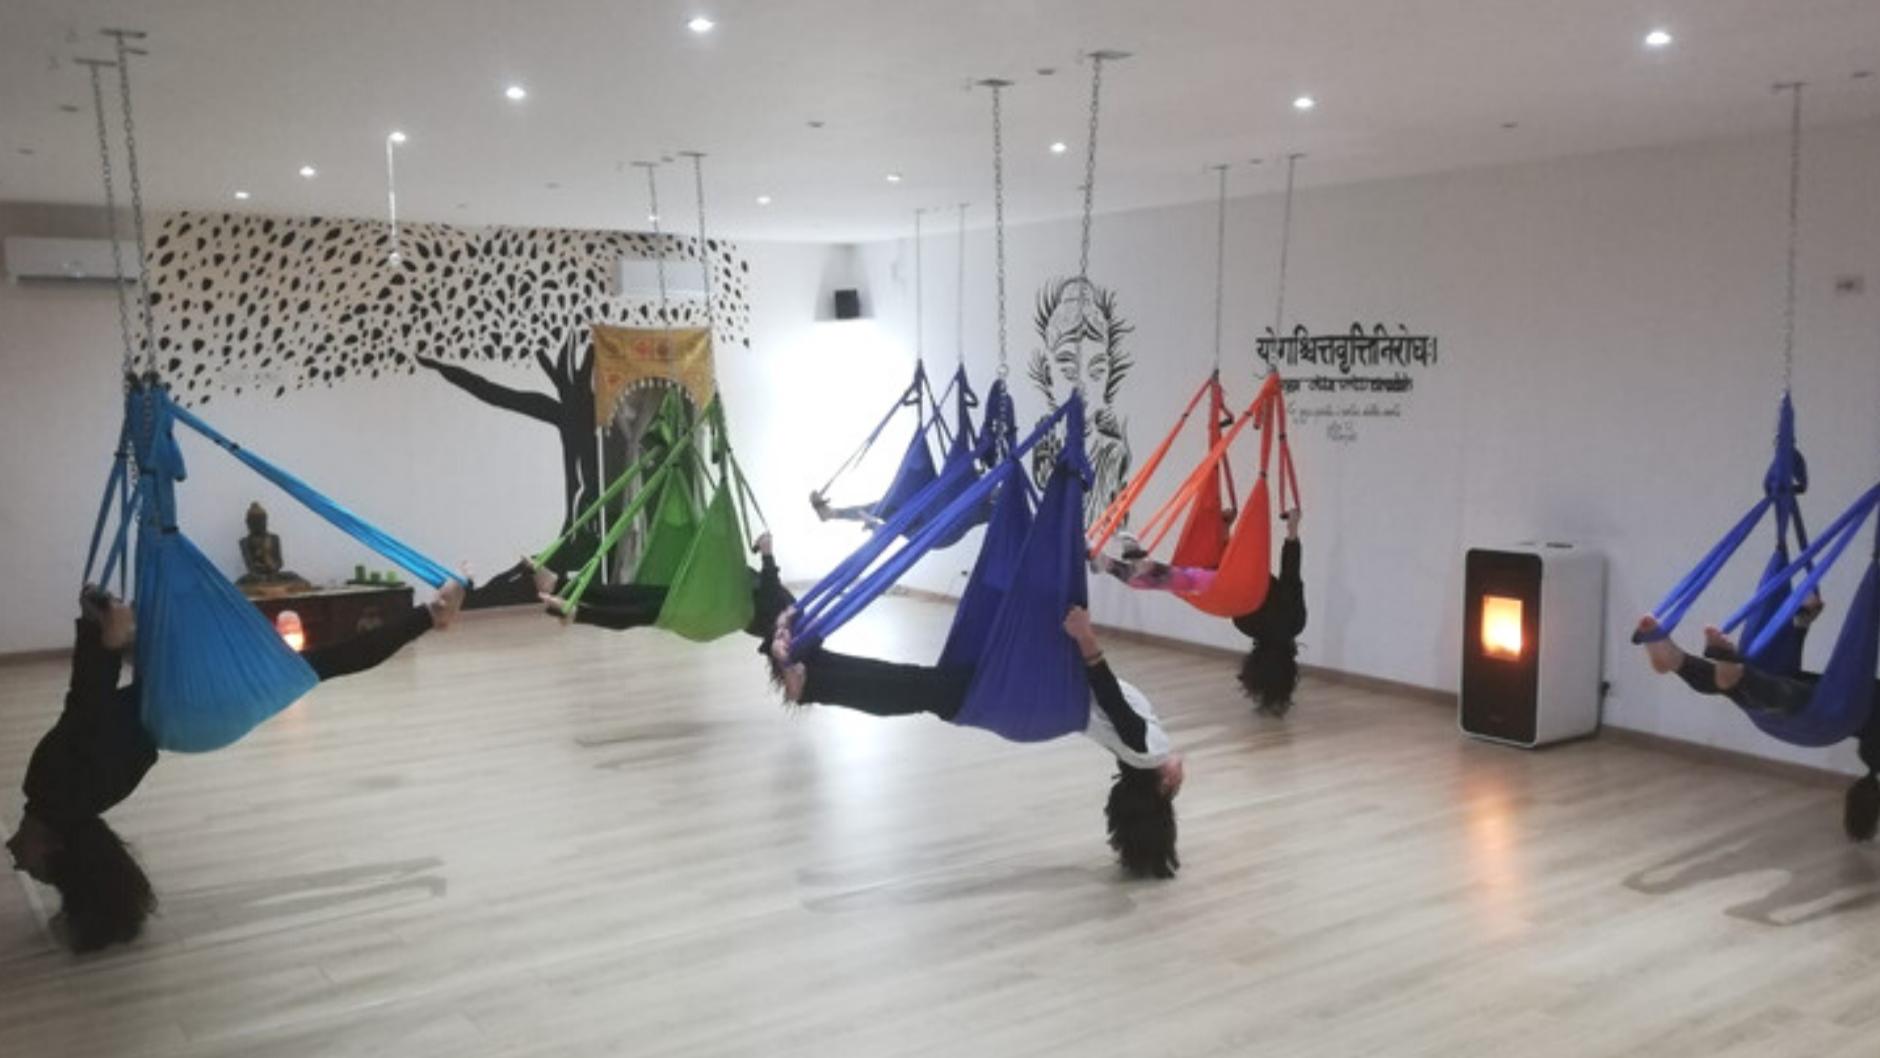 Aerial Yoga, Classi di yoga in amaca